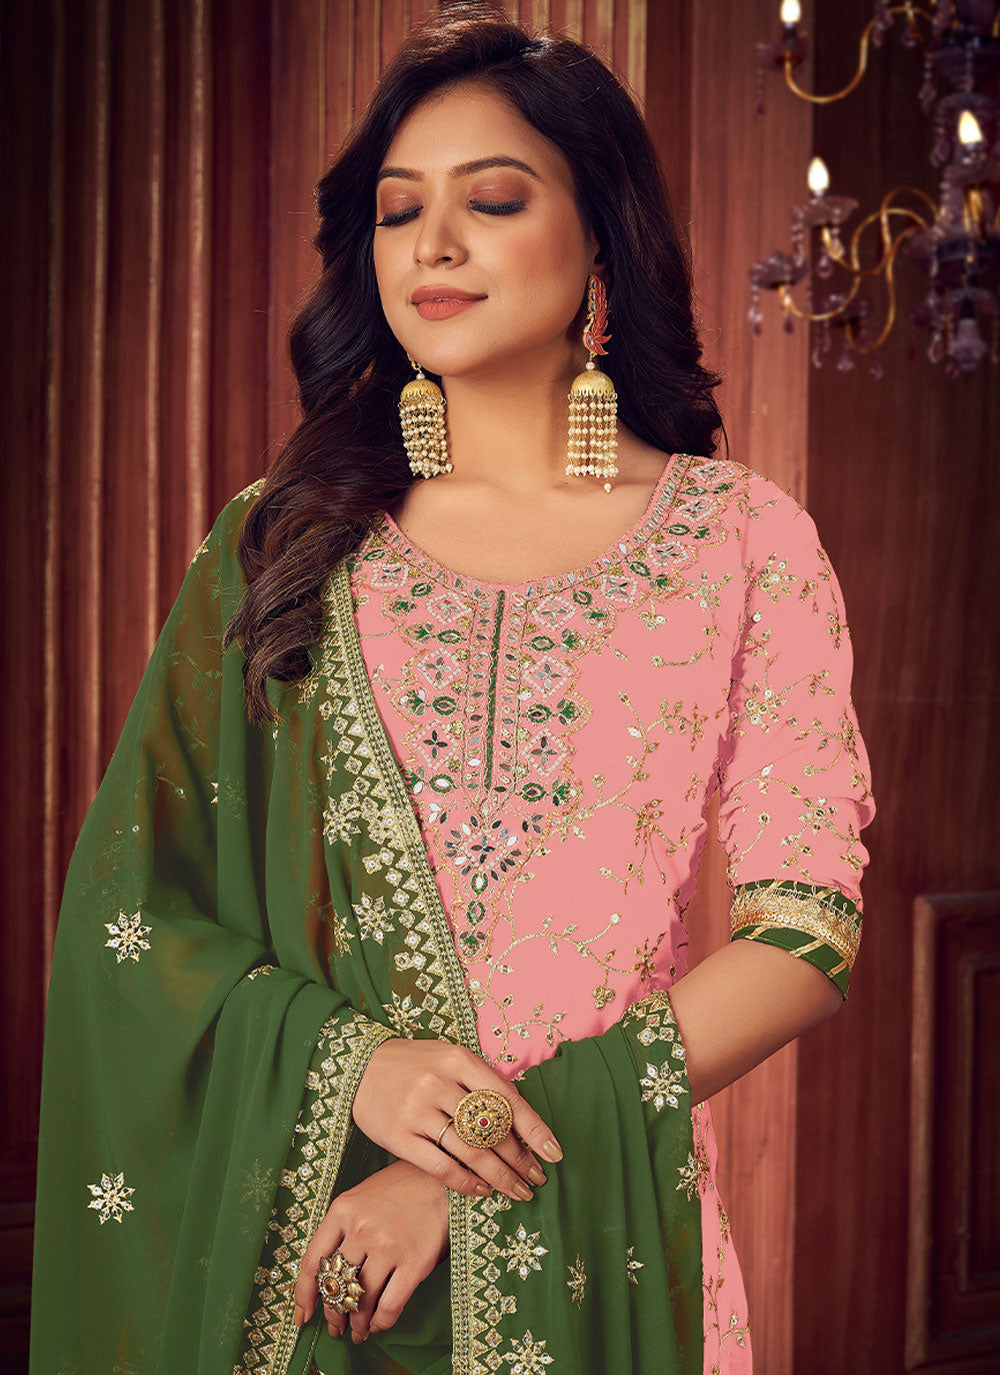 Embroidered Pink Faux Georgette Trendy Designer Salwar Suit